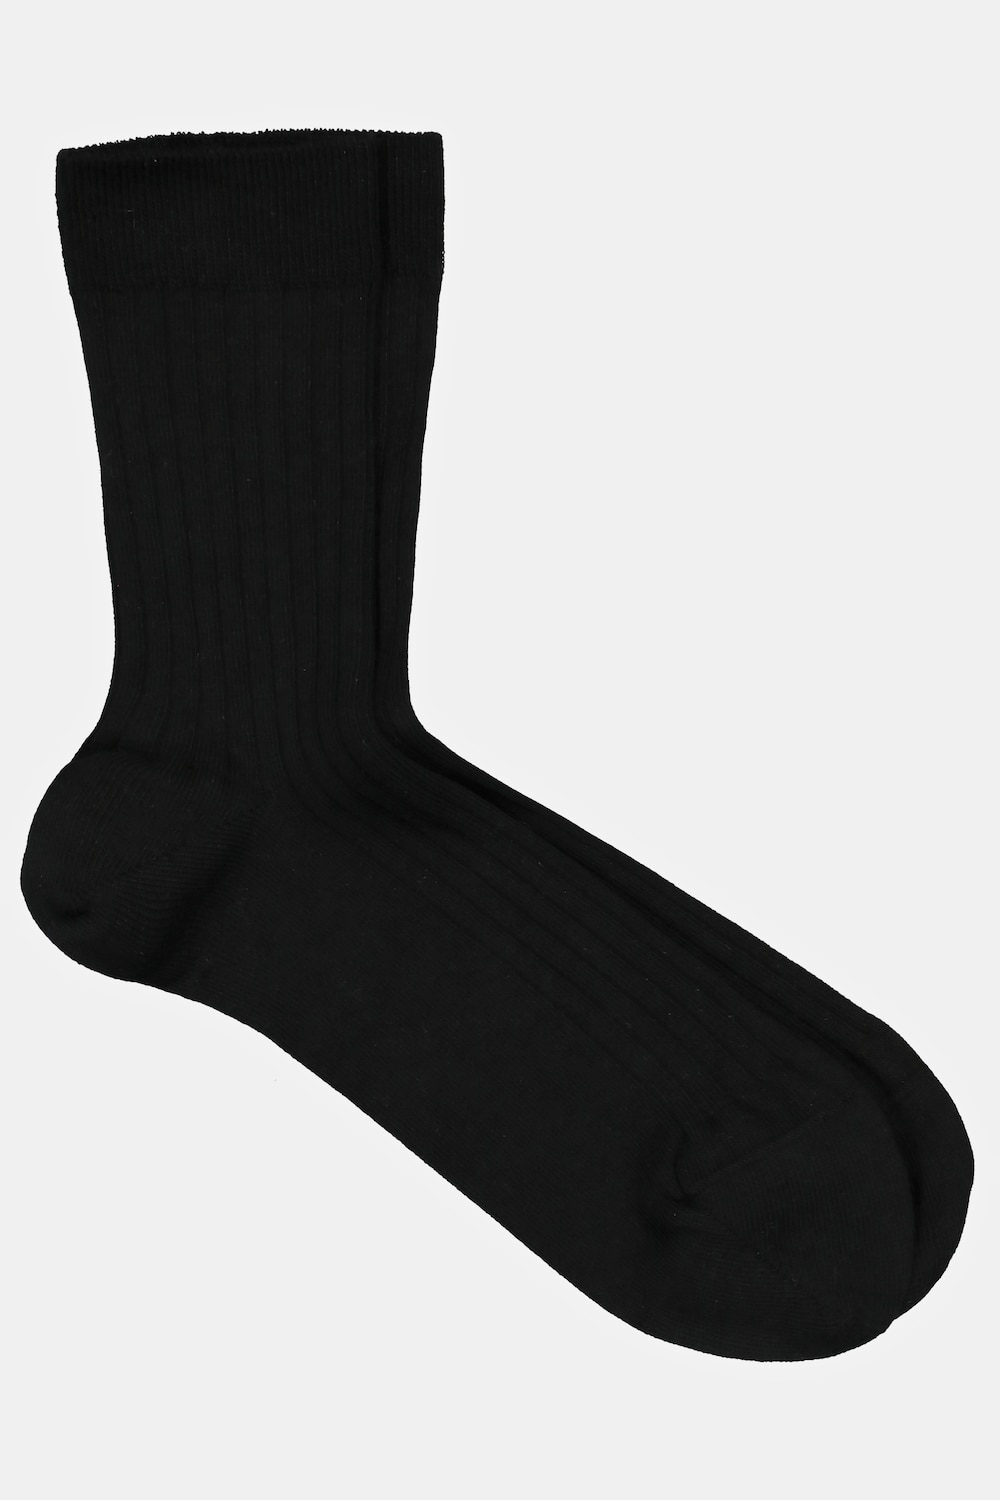 Socken, Große Größen, Herren, schwarz, Größe: 47-50, Baumwolle/Synthetische Fasern, JP1880 product